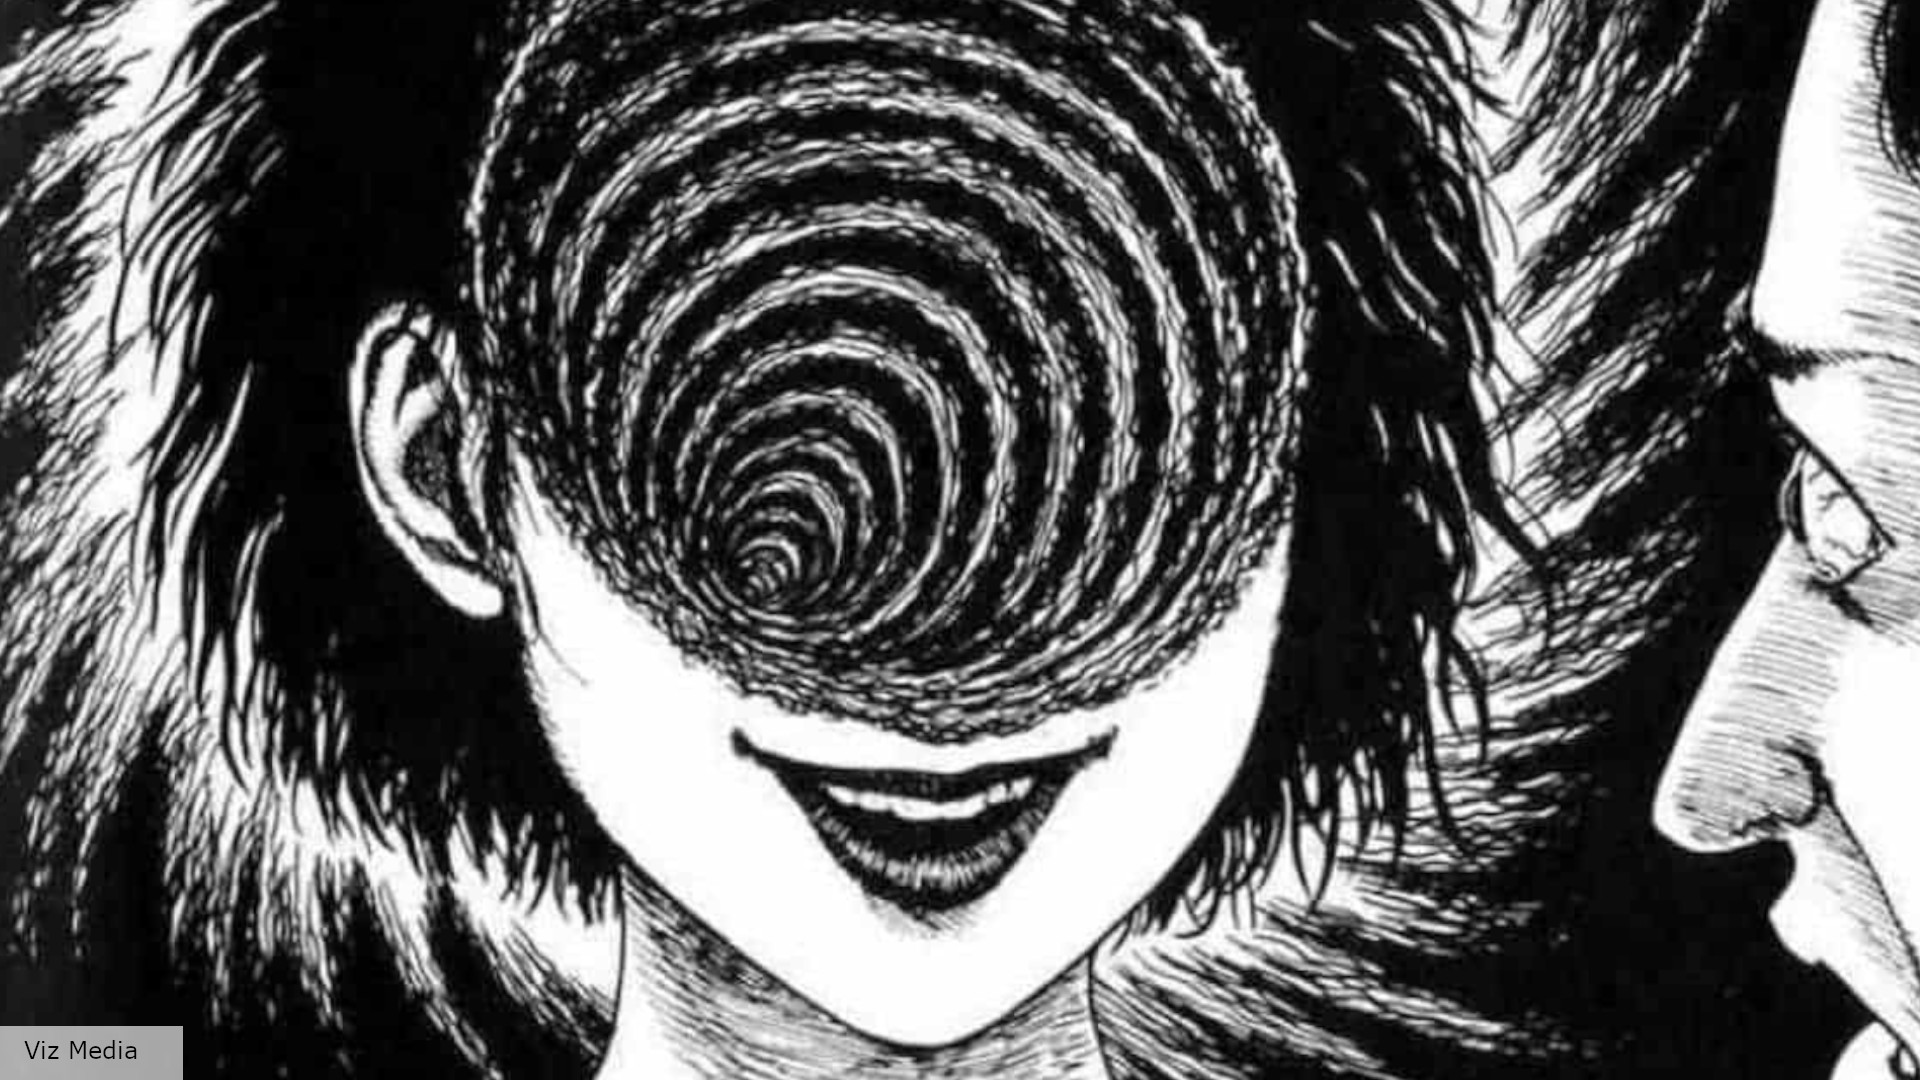 Uzumaki anime release date: Một người phụ nữ nằm trên cỏ trần với lời nguyền xoắn ốc trong trailer của anime Uzumaki